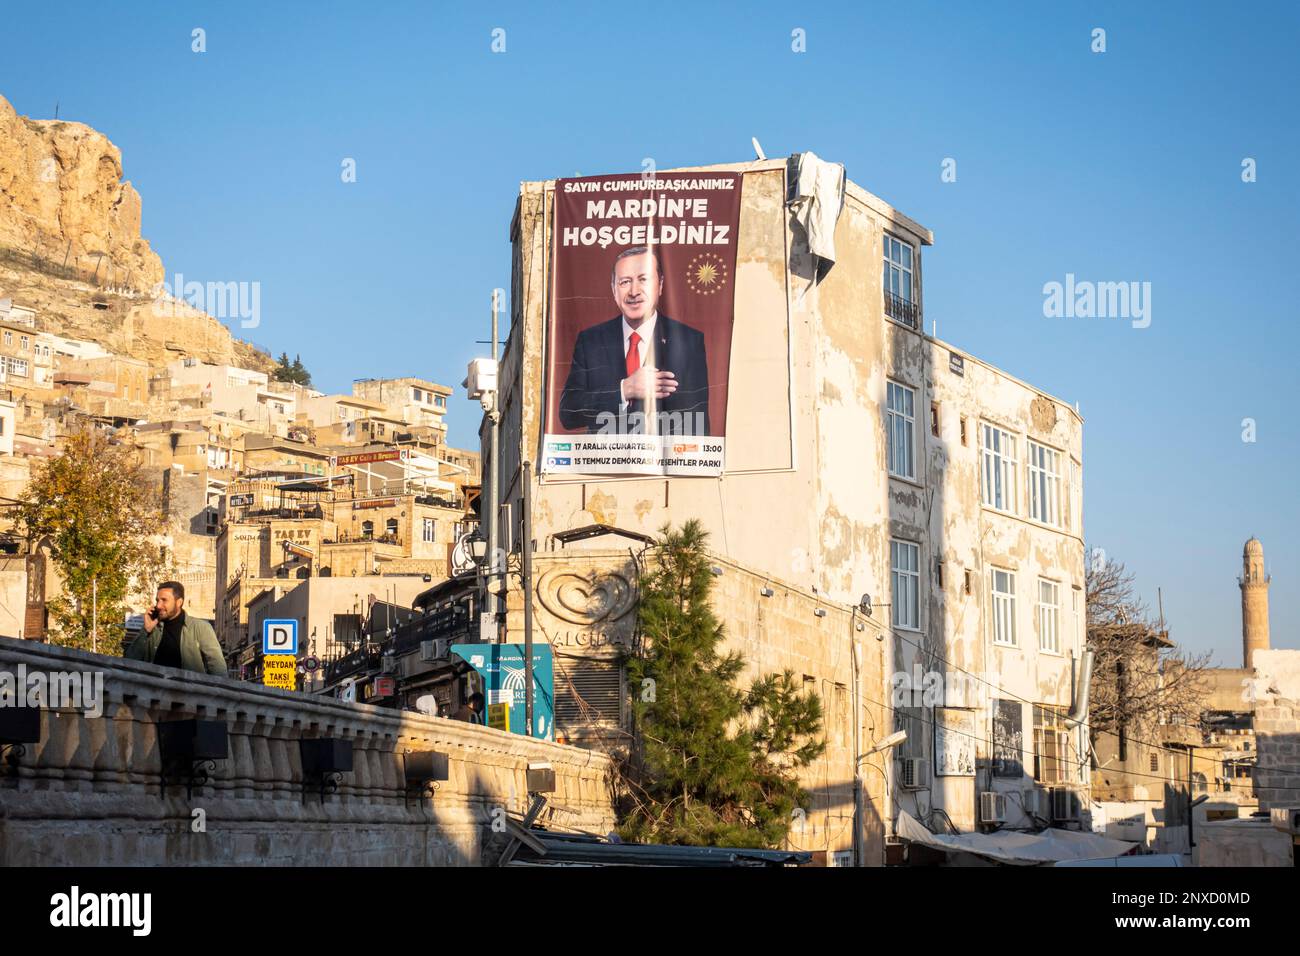 La campagne présidentielle de Recep Tayyip Erdoğan en prévision des élections dans la ville historique de Mardin en Turquie Banque D'Images